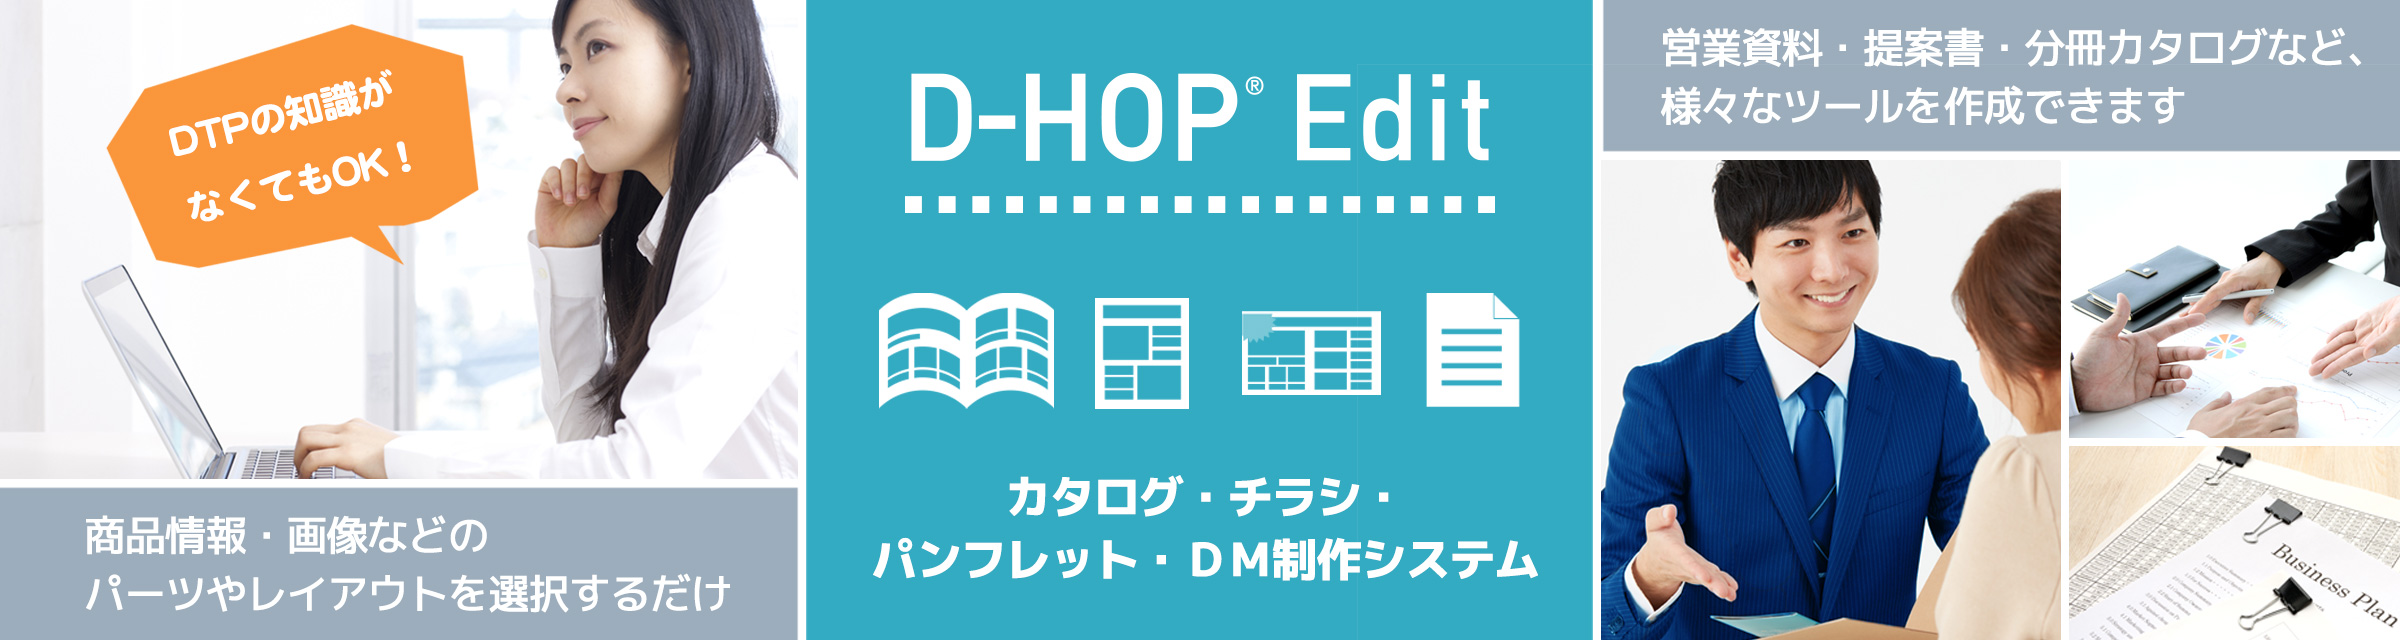 カタログ・チラシ・パンフレット・DM制作システム「D-HOP® edit」